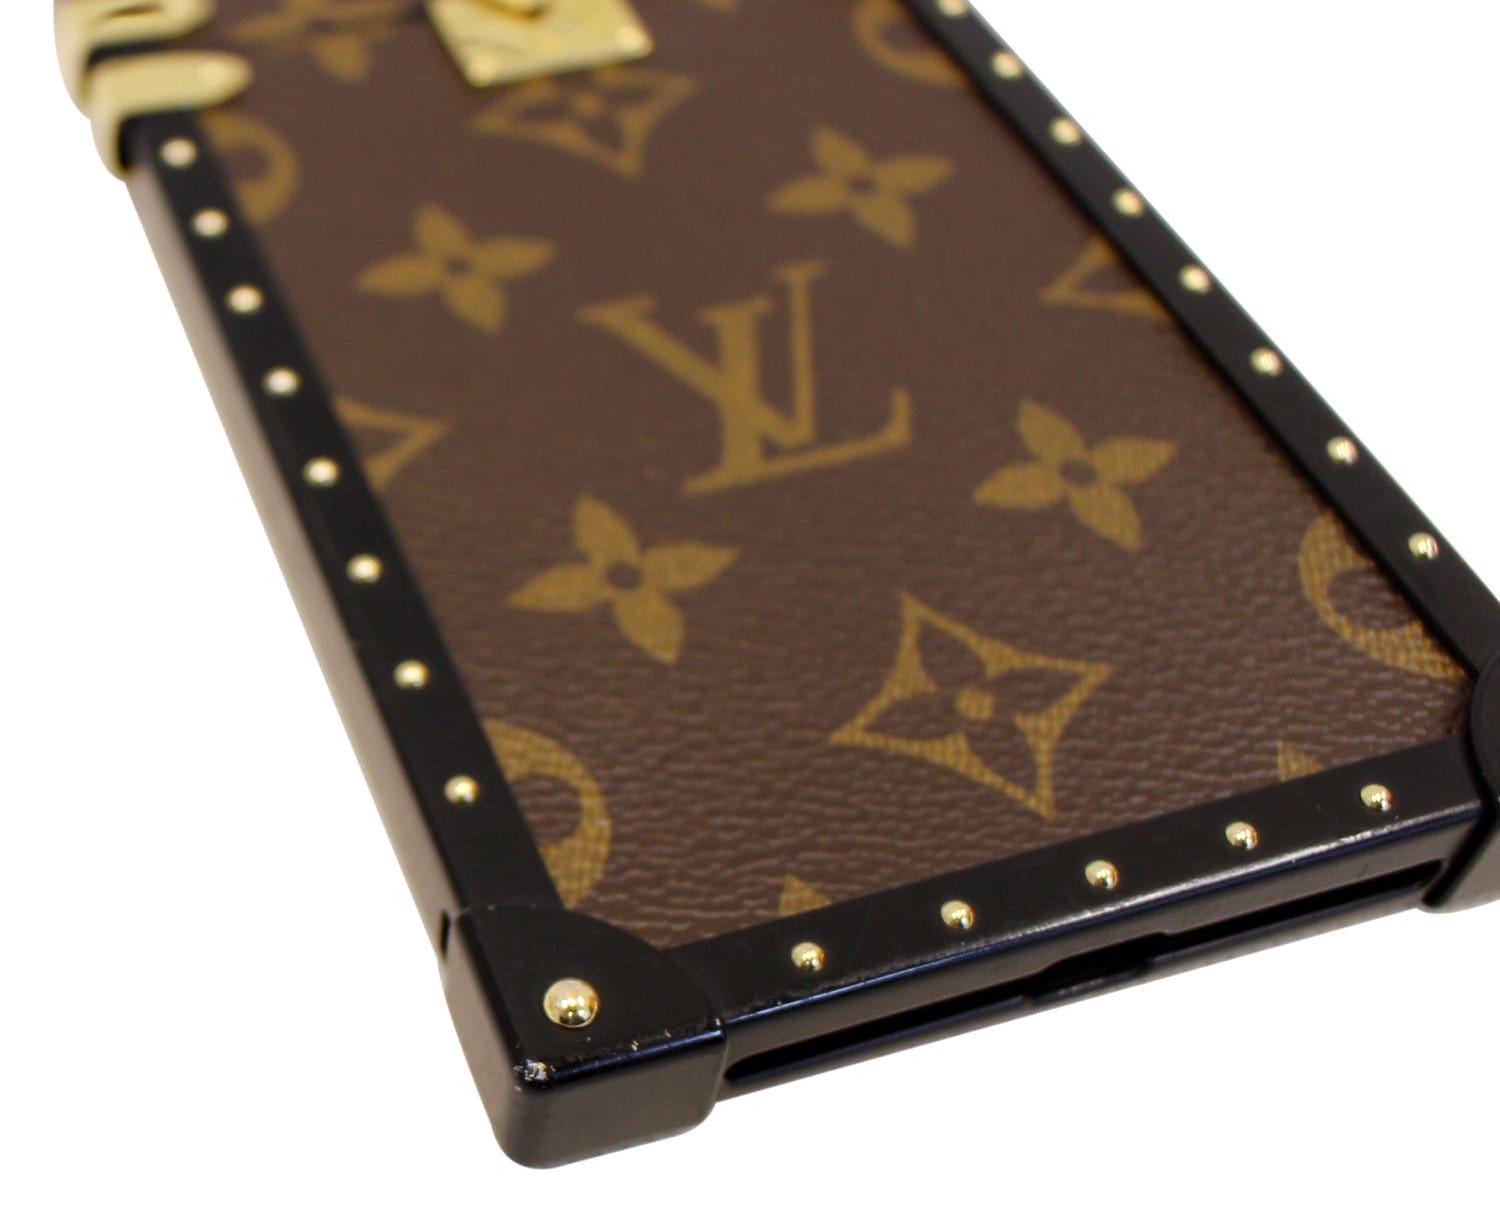 iPhone 7 Plus Case Louis Vuitton 